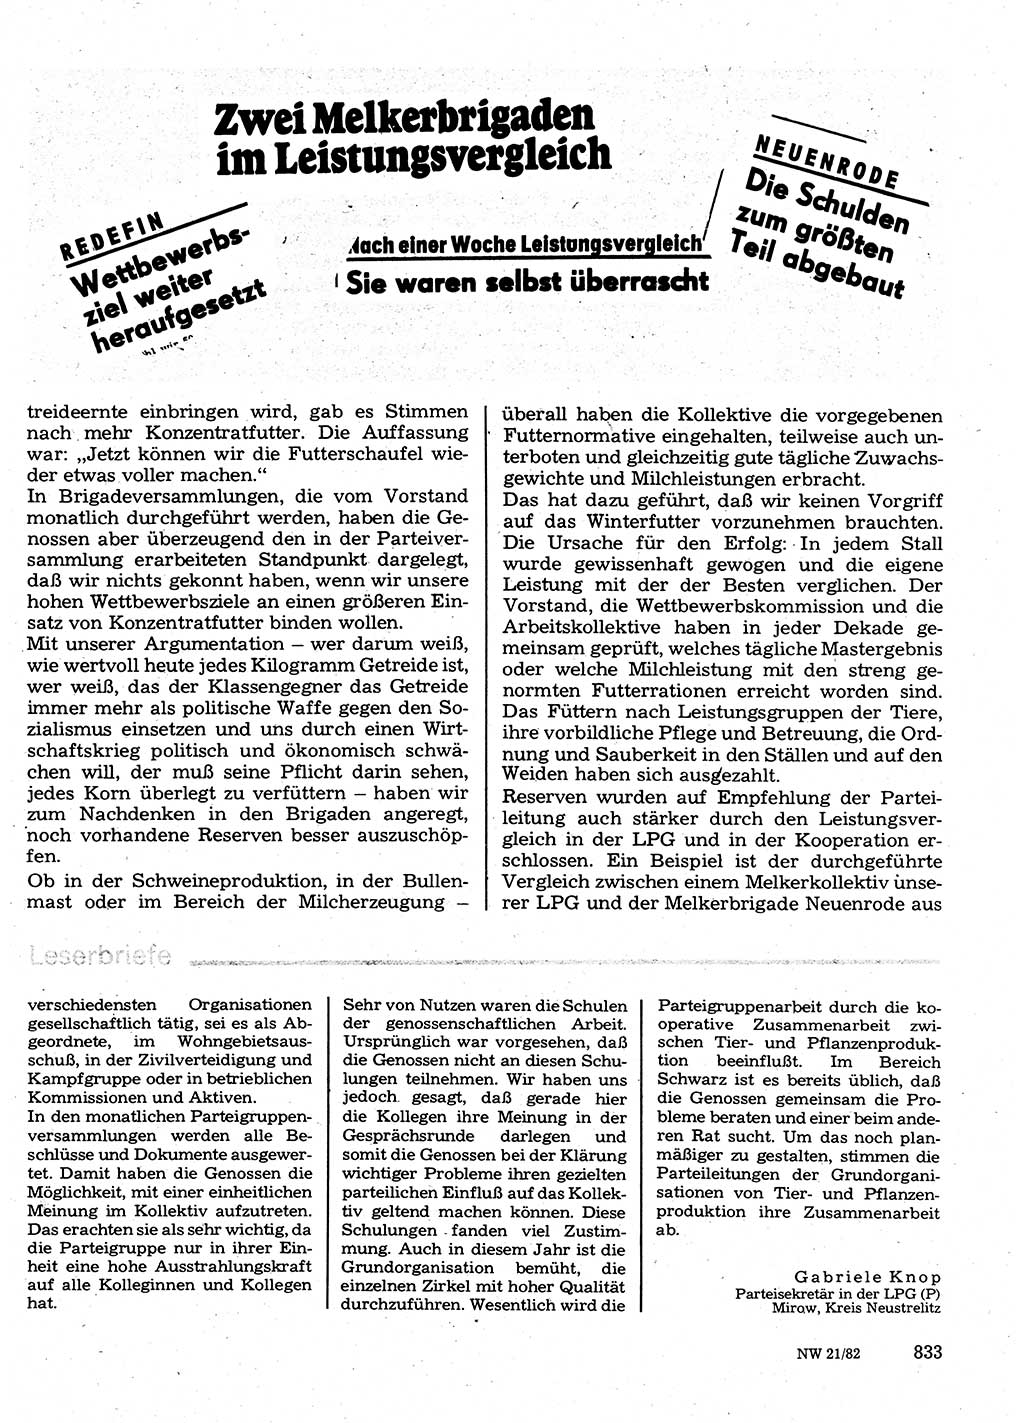 Neuer Weg (NW), Organ des Zentralkomitees (ZK) der SED (Sozialistische Einheitspartei Deutschlands) für Fragen des Parteilebens, 37. Jahrgang [Deutsche Demokratische Republik (DDR)] 1982, Seite 833 (NW ZK SED DDR 1982, S. 833)